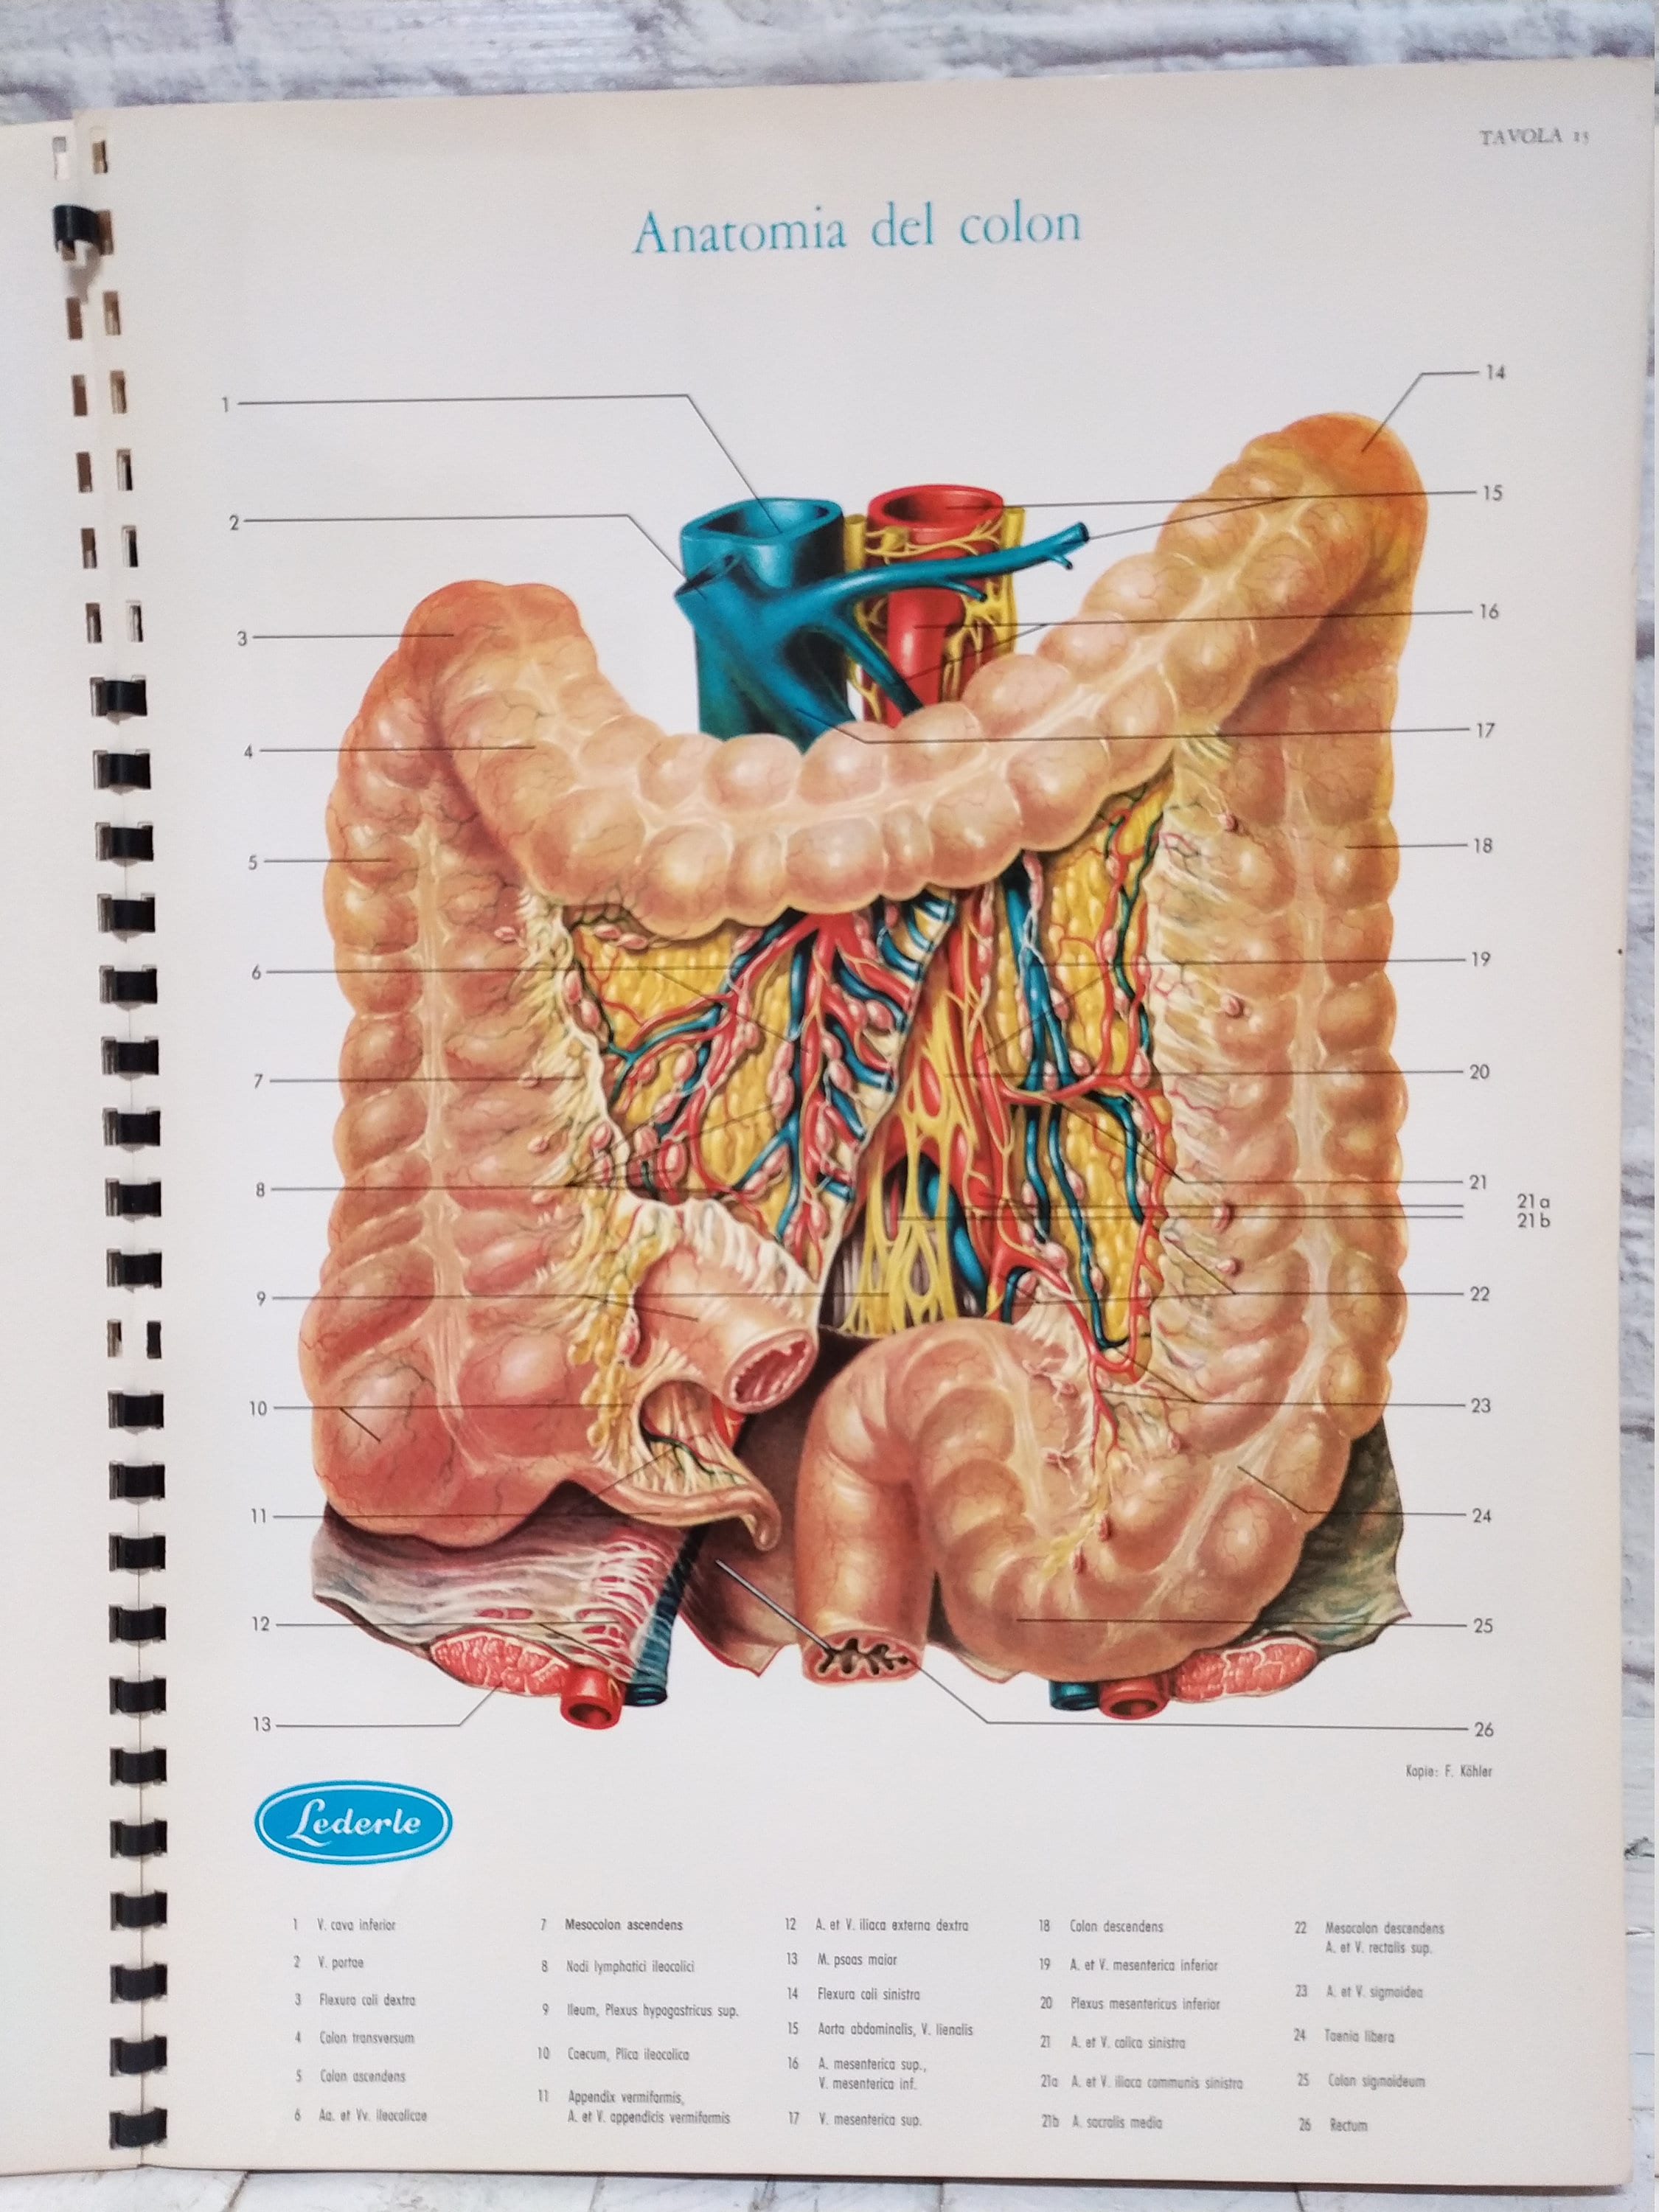 Atlante di anatomia umana (libro - Libri e Riviste In vendita a